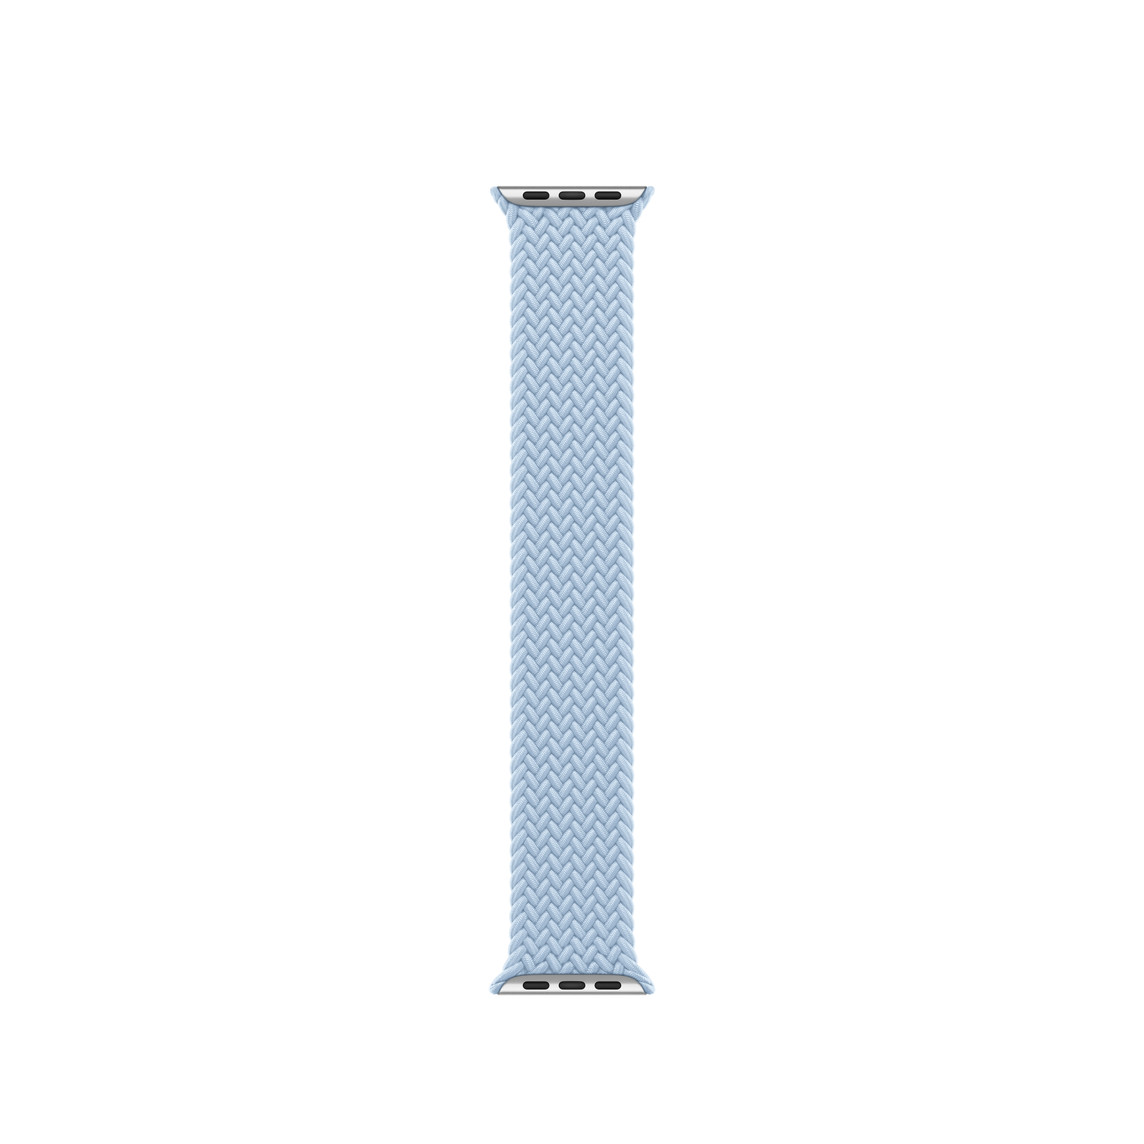 Bracelet Boucle unique tressée bleu clair, en polyester tissé et fils de silicone sans fermoir ni attache